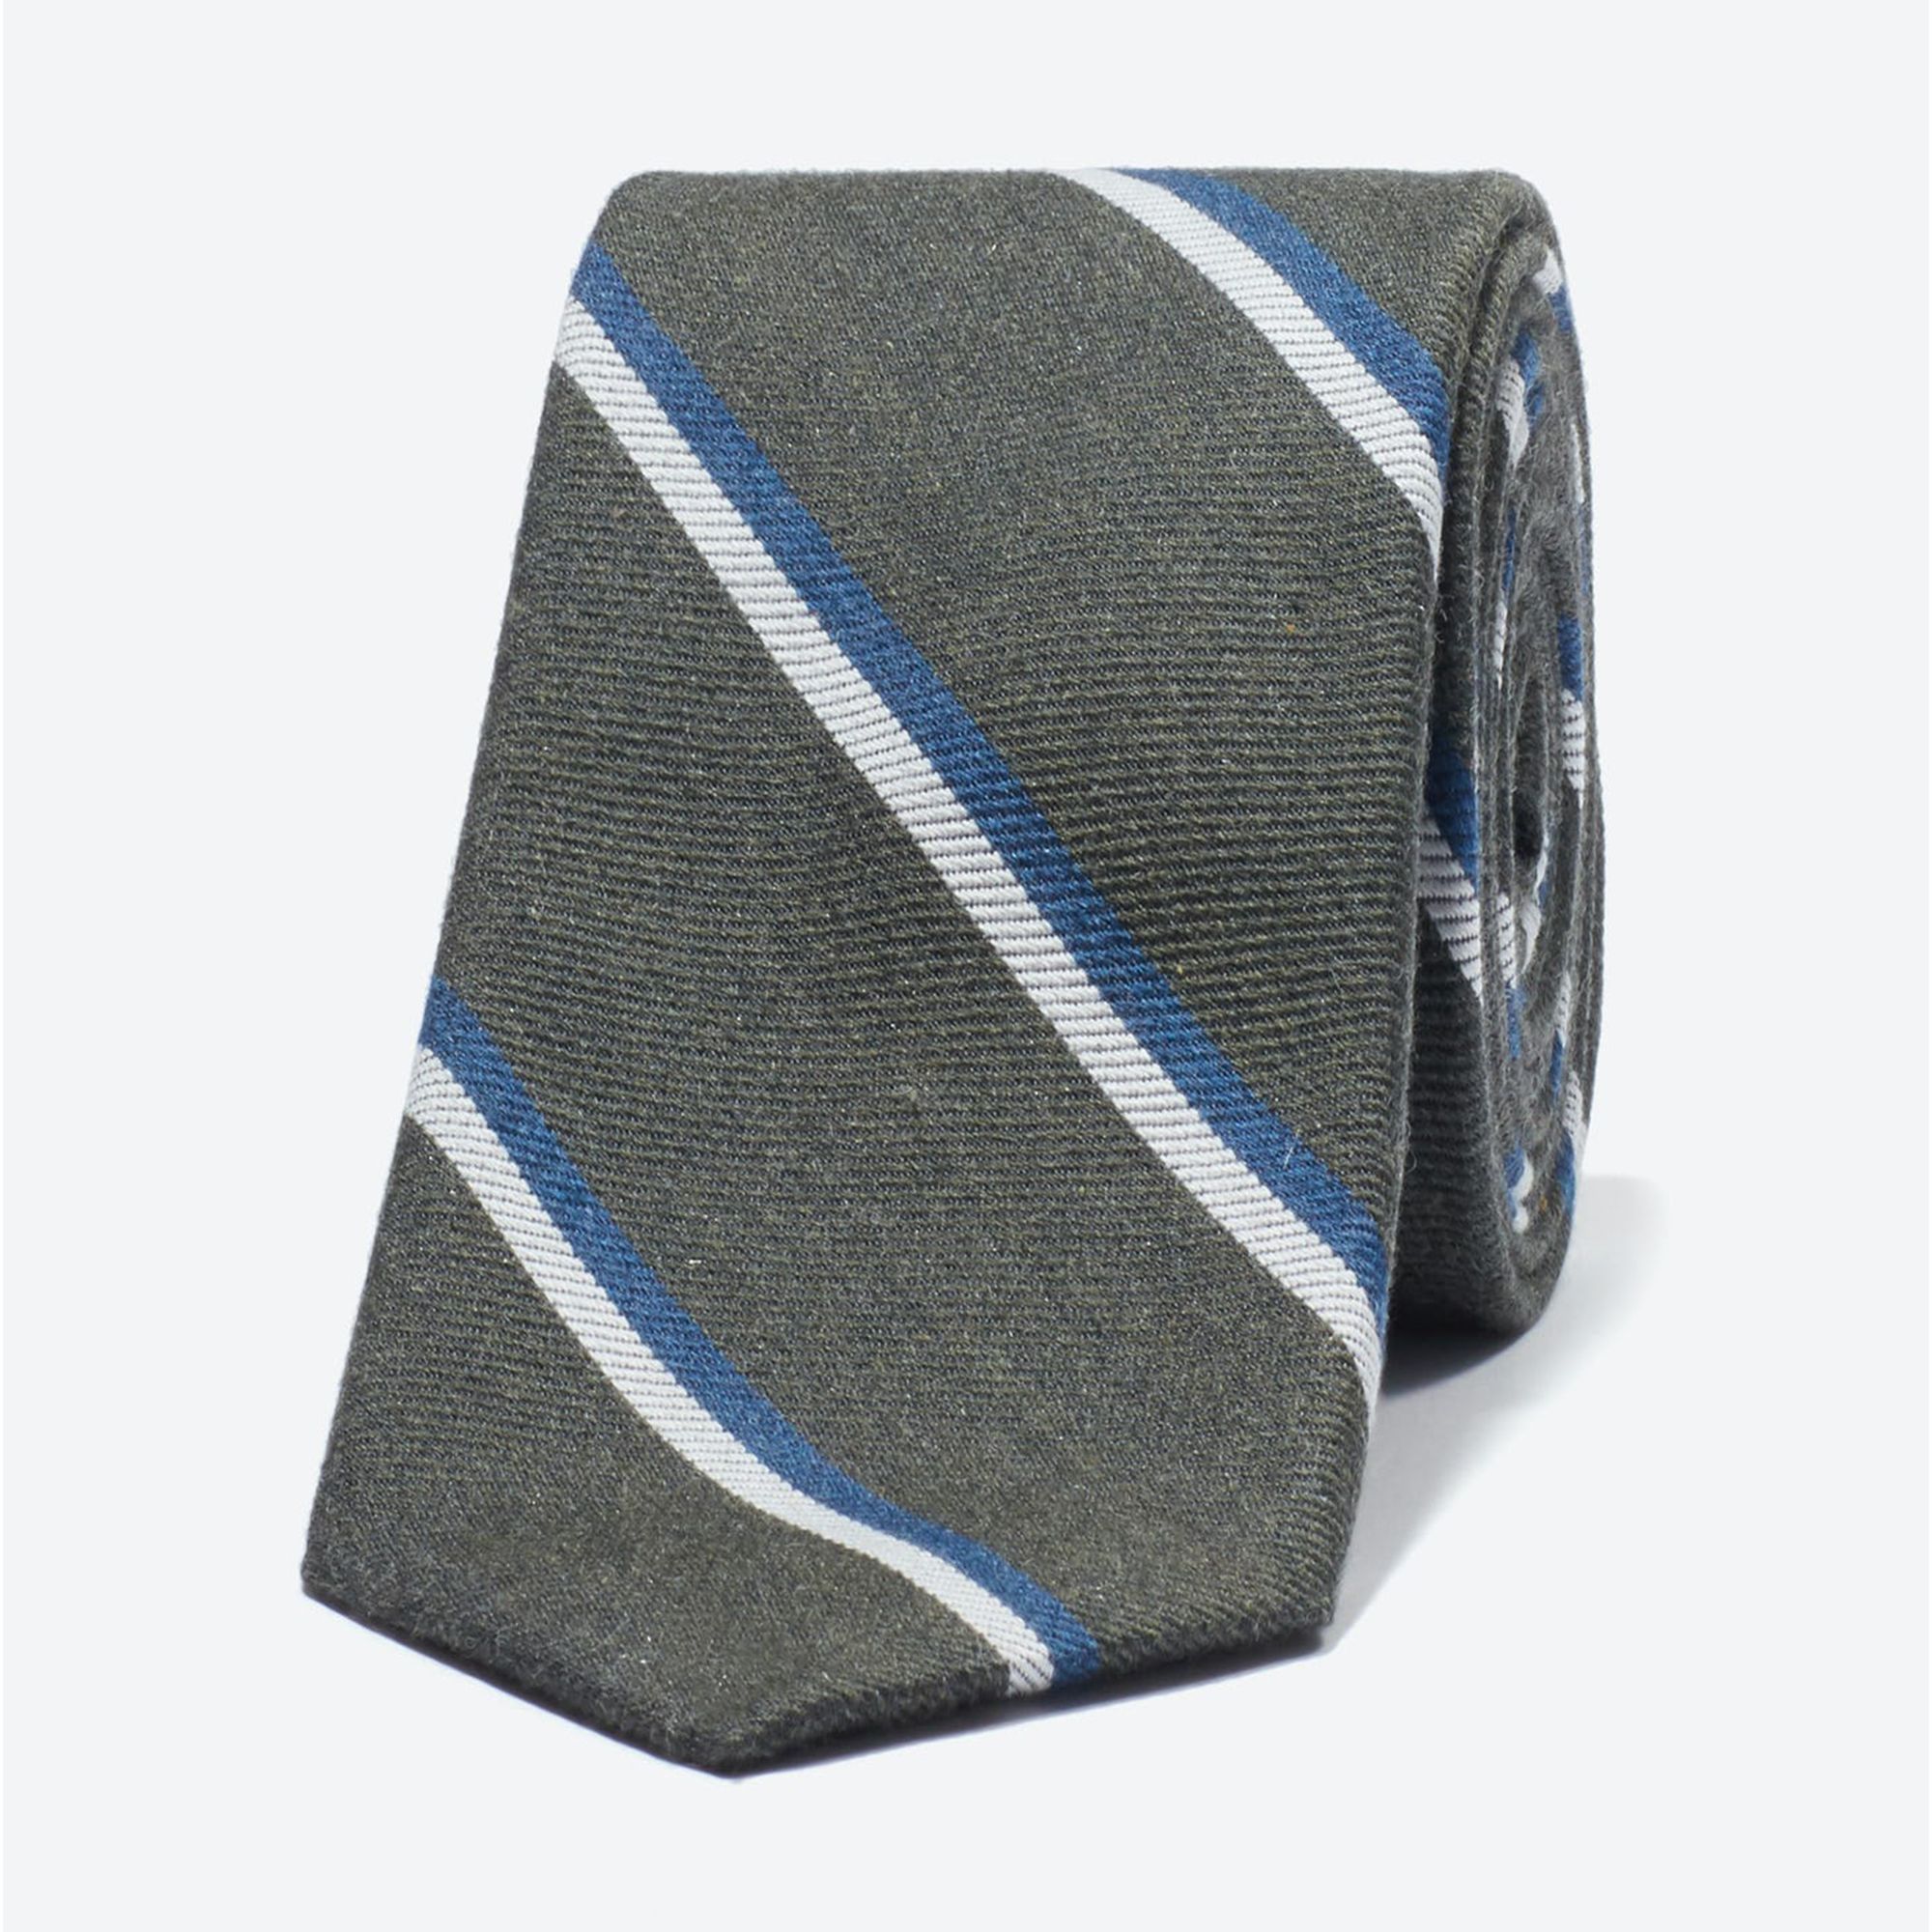 Premium Necktie